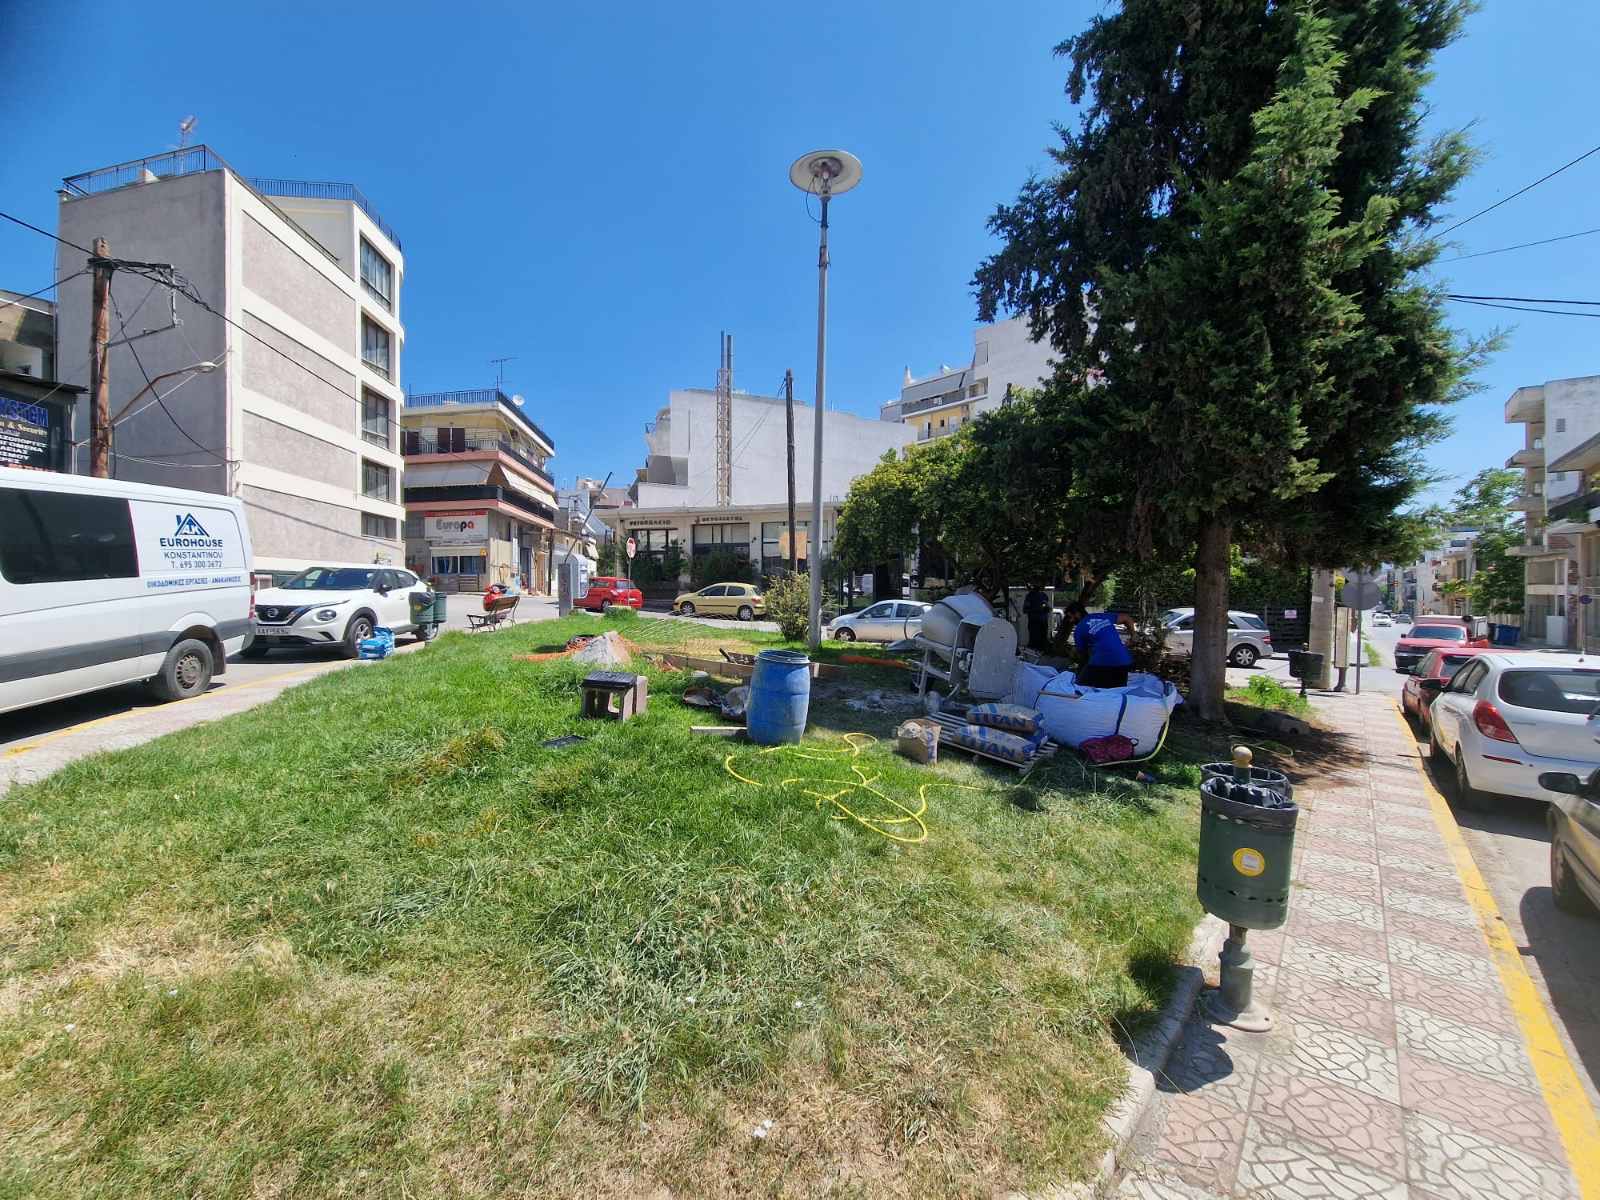 Χαλκίδα: Πέφτει χρήμα στα πάρκα της πρωτεύουσας – Έργο αξίας 298.275,87 ευρώ